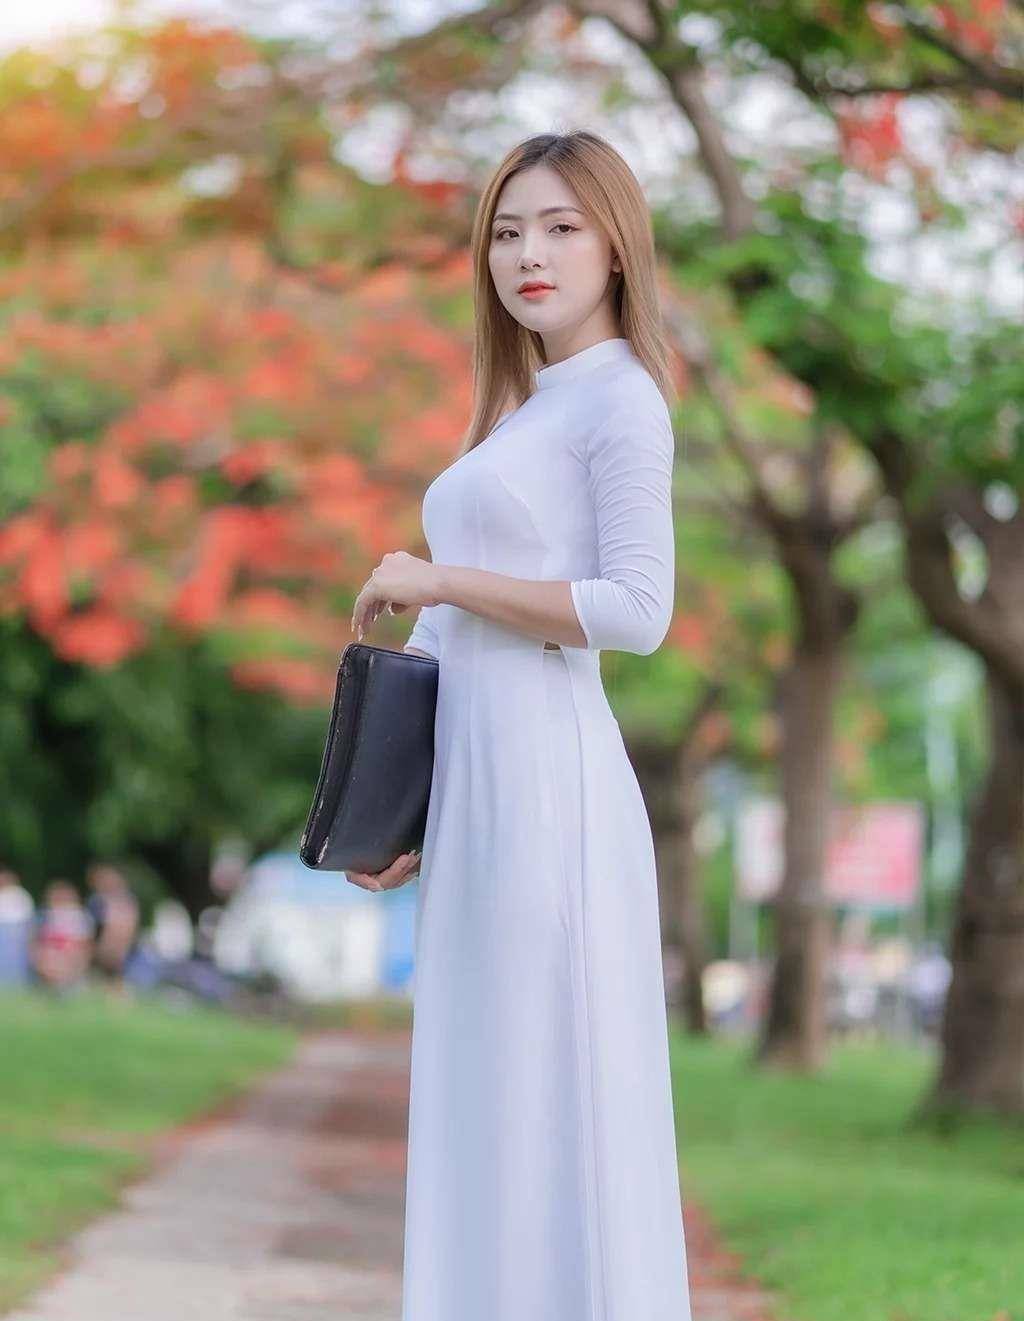 越南女生,一身白色奥黛穿搭,美得清新又温婉,优雅大方魅力十足